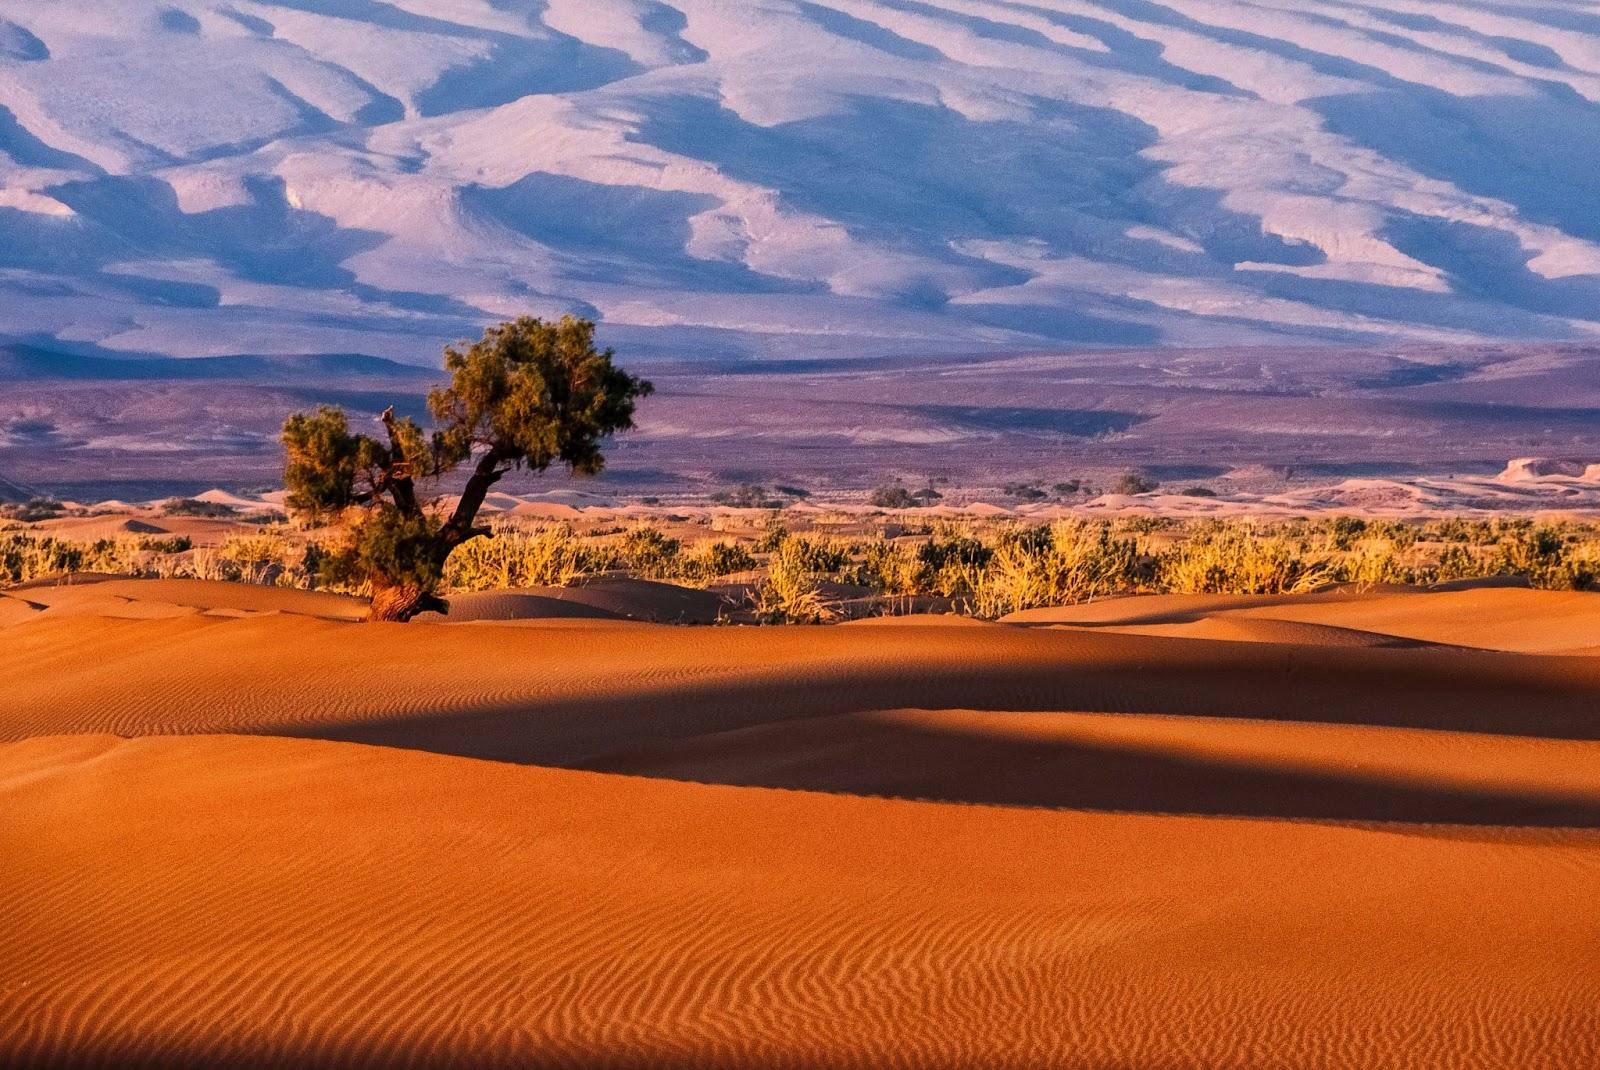 Tree in the Sahara desert. Tamnougalt.